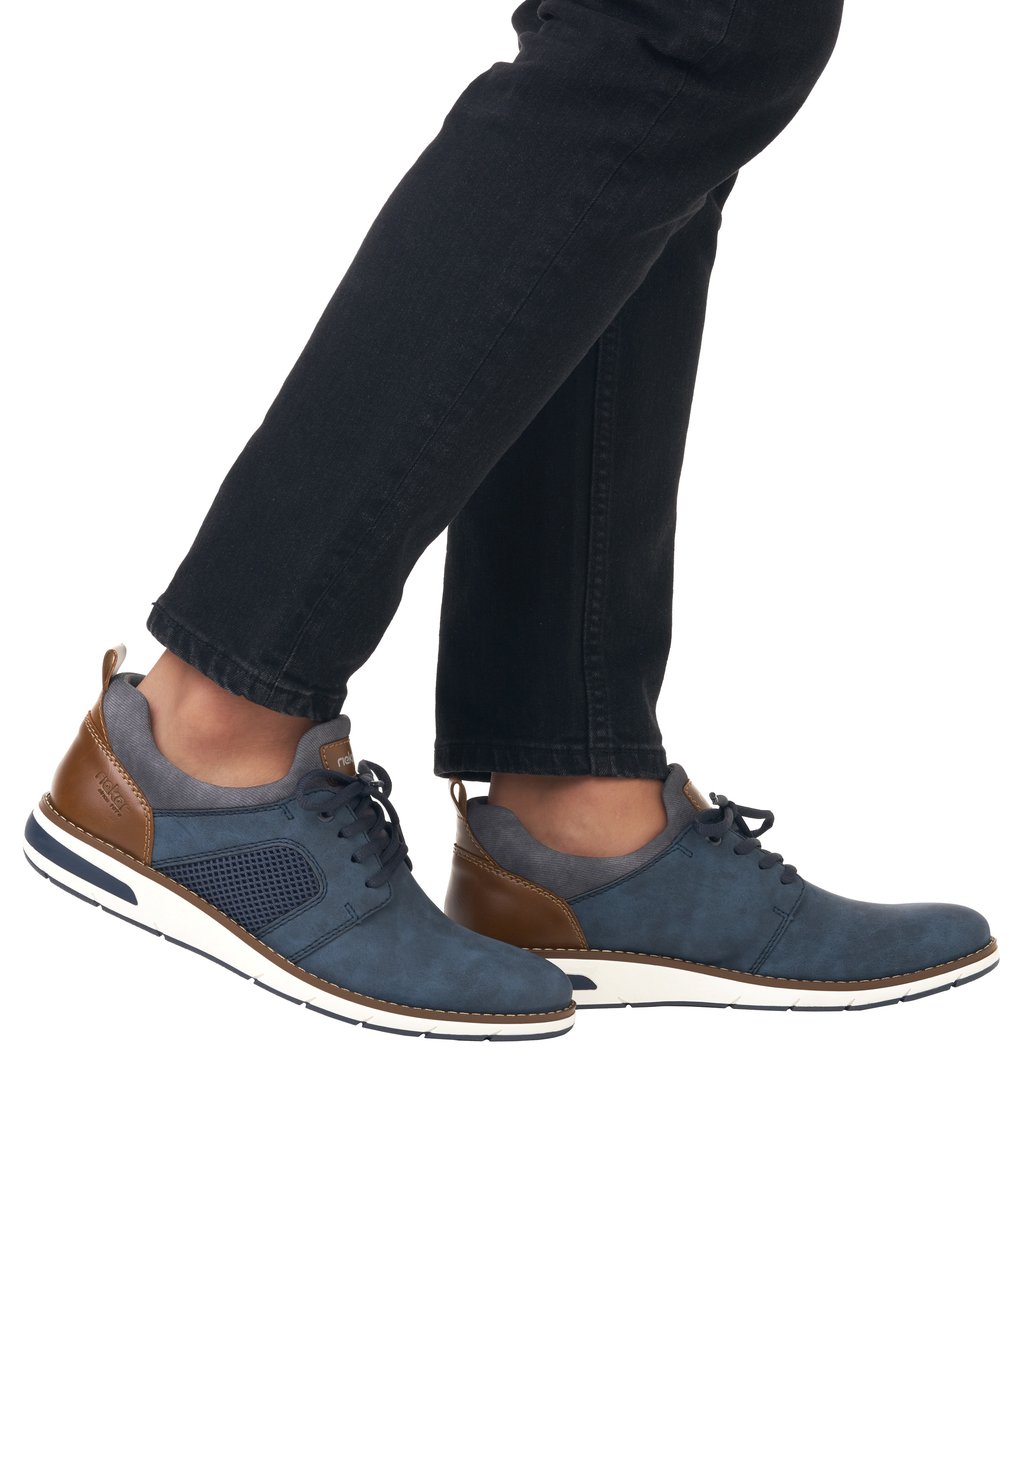 Спортивные туфли на шнуровке Rieker, цвет blau